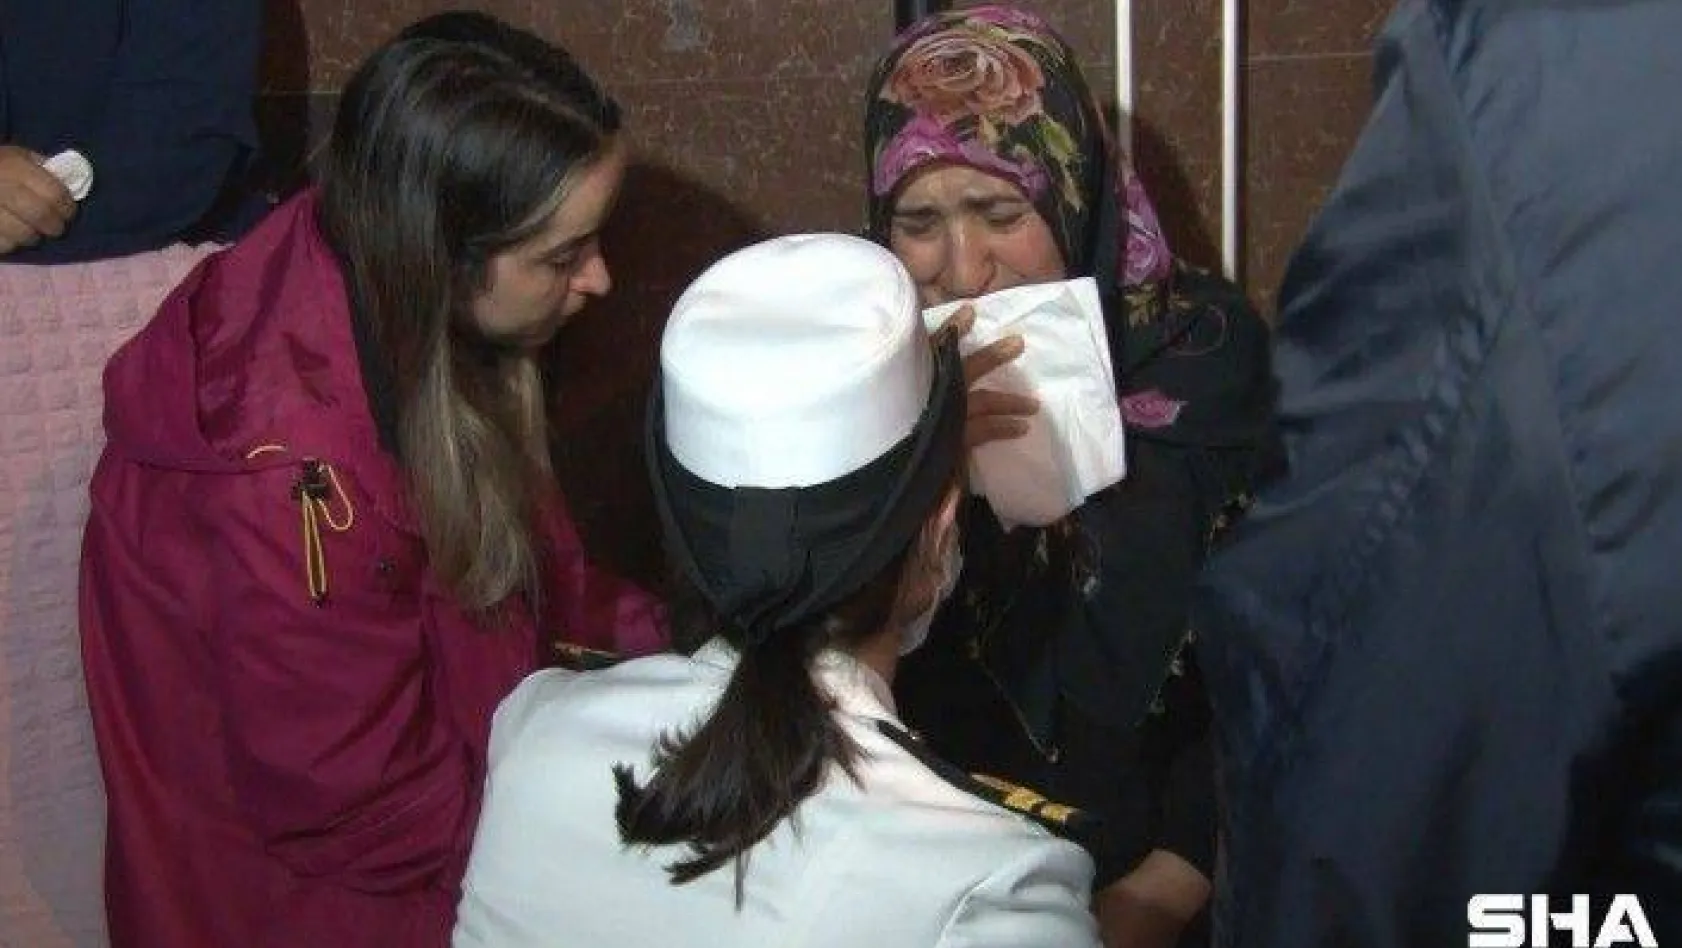 Hatay'da şehit düşen uzman çavuşun İstanbul'daki ailesine acı haber ulaştı